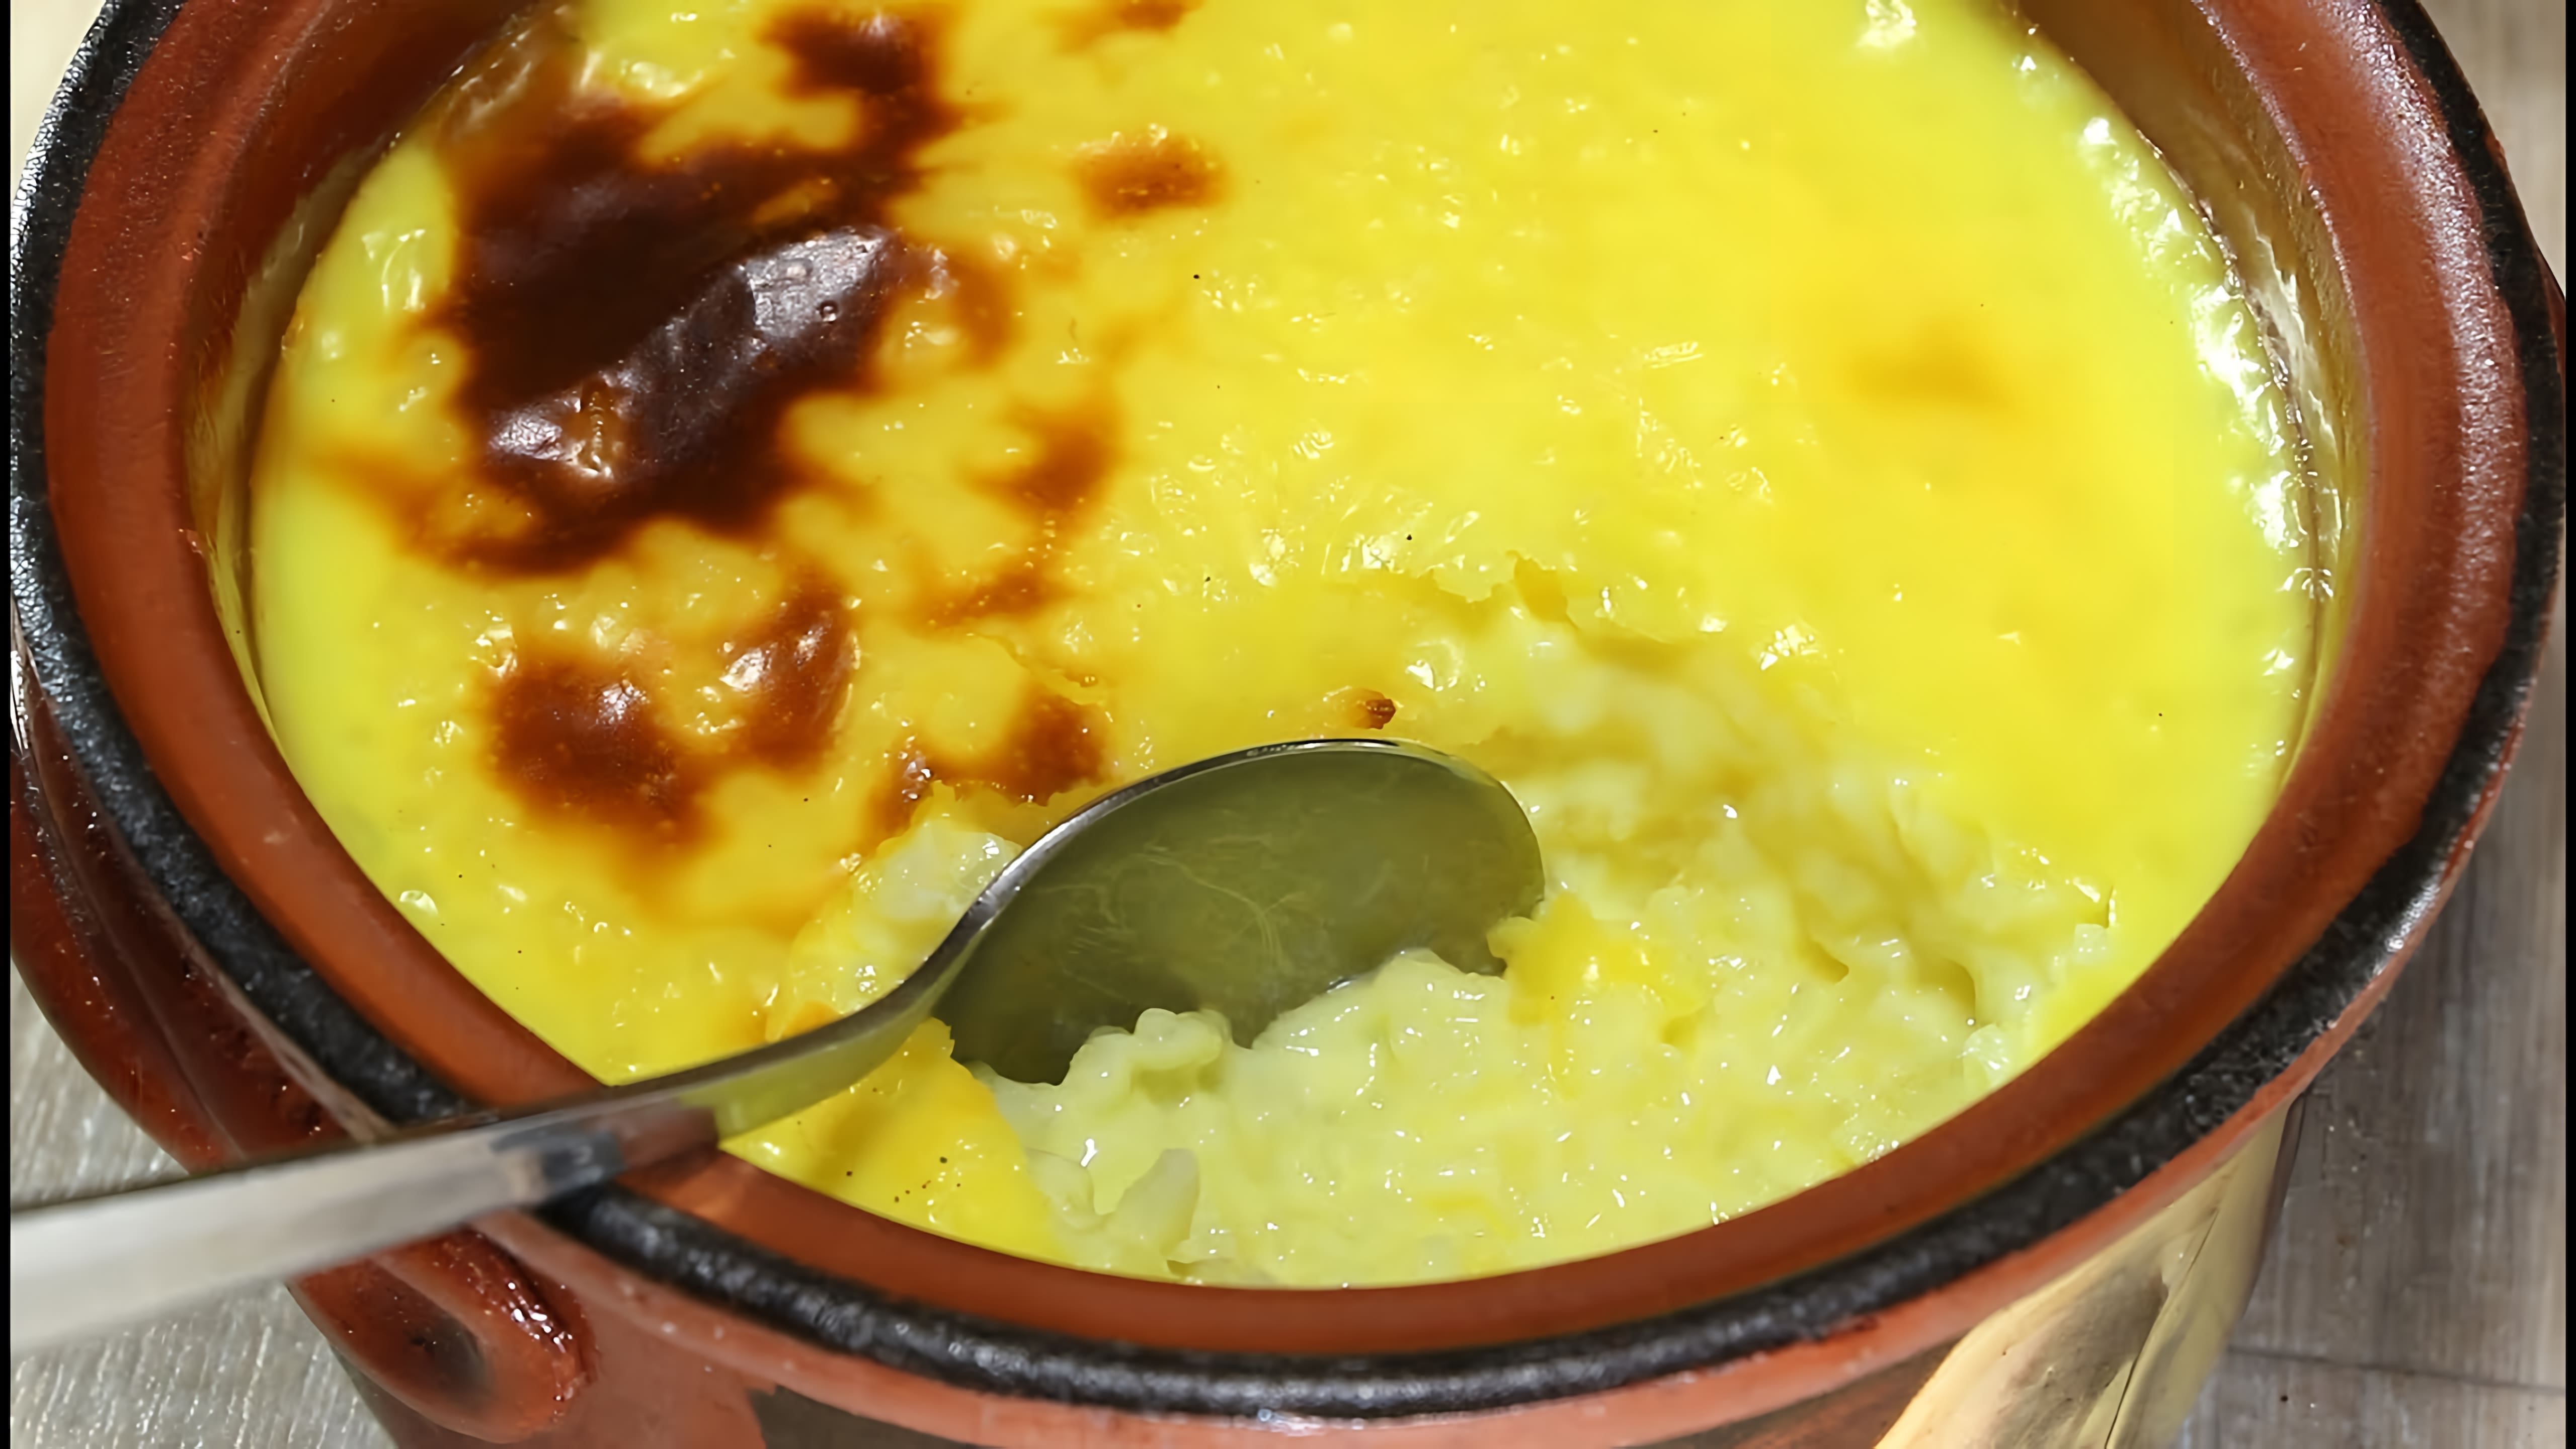 Рисовый пудинг - турецкое искушение для сладкоежек - это видео-ролик, который демонстрирует процесс приготовления рисового пудинга, традиционного турецкого десерта